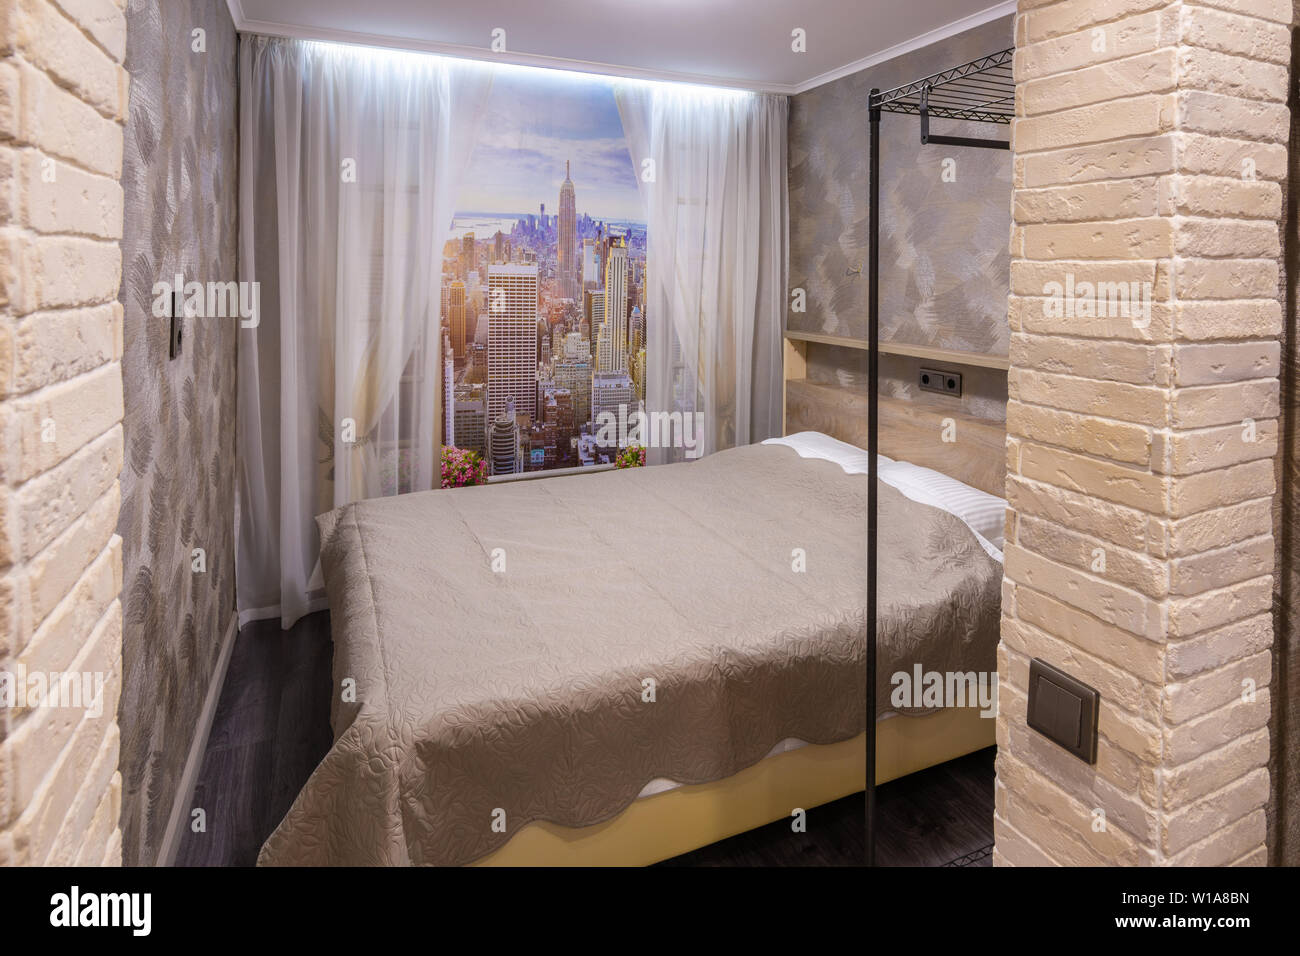 L'Anapa, Russie - le 27 juin 2019 : Fragment d'une petite chambre à coucher dans une chambre d'hôtel Banque D'Images